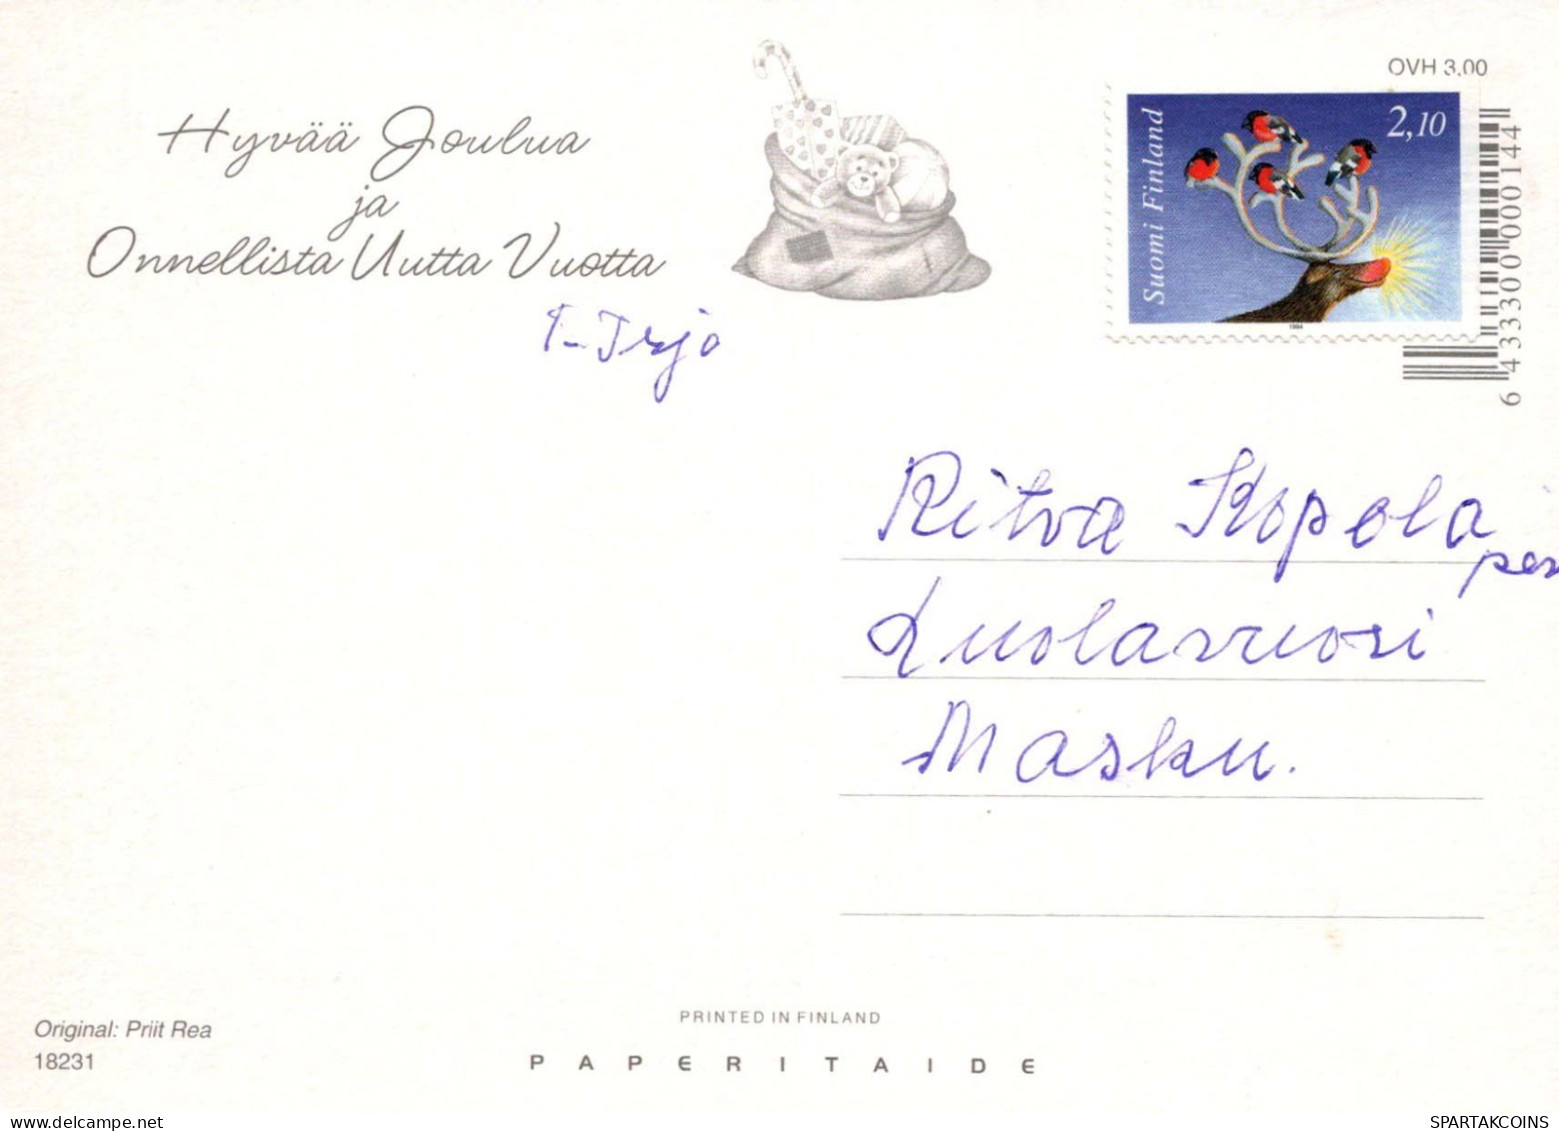 PÈRE NOËL Bonne Année Noël CERF Vintage Carte Postale CPSM #PBB210.A - Santa Claus